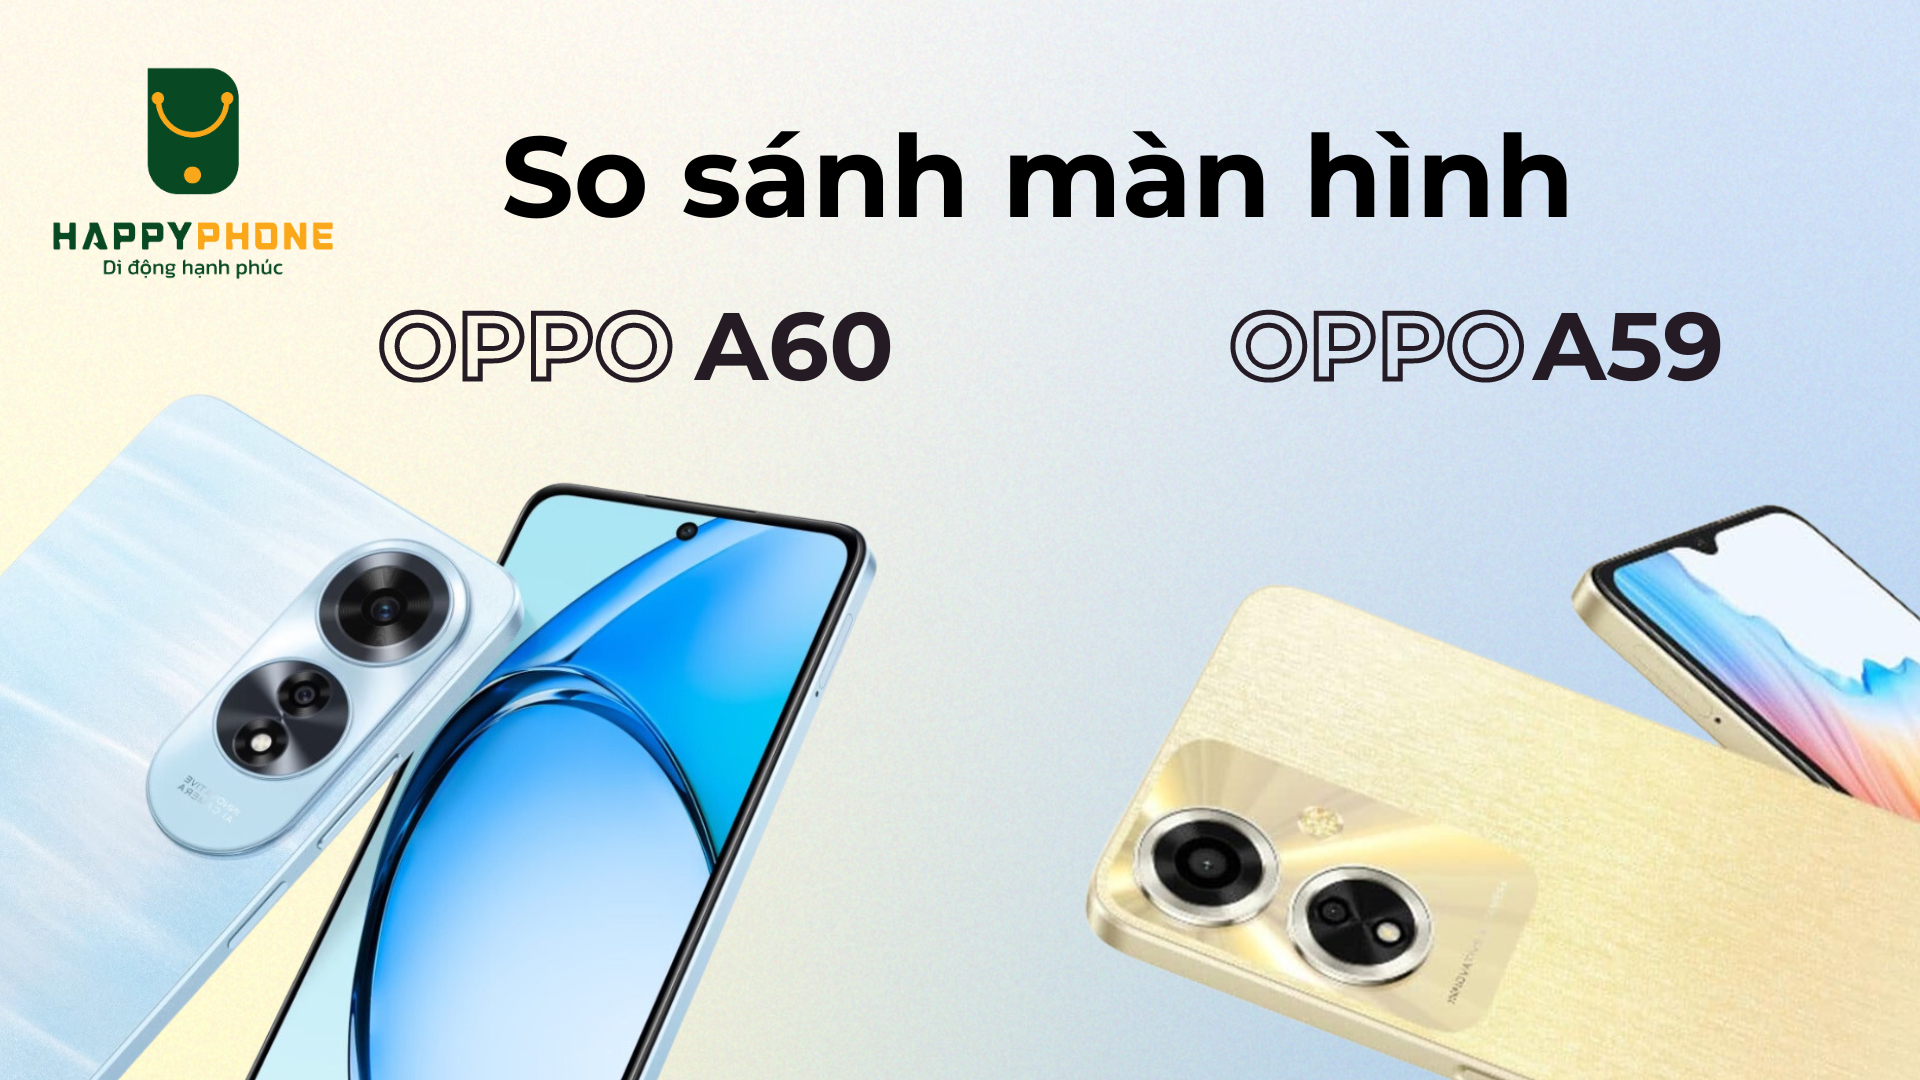 So sánh màn hình OPPO A60 và OPPO A59 khác gì về tính năng